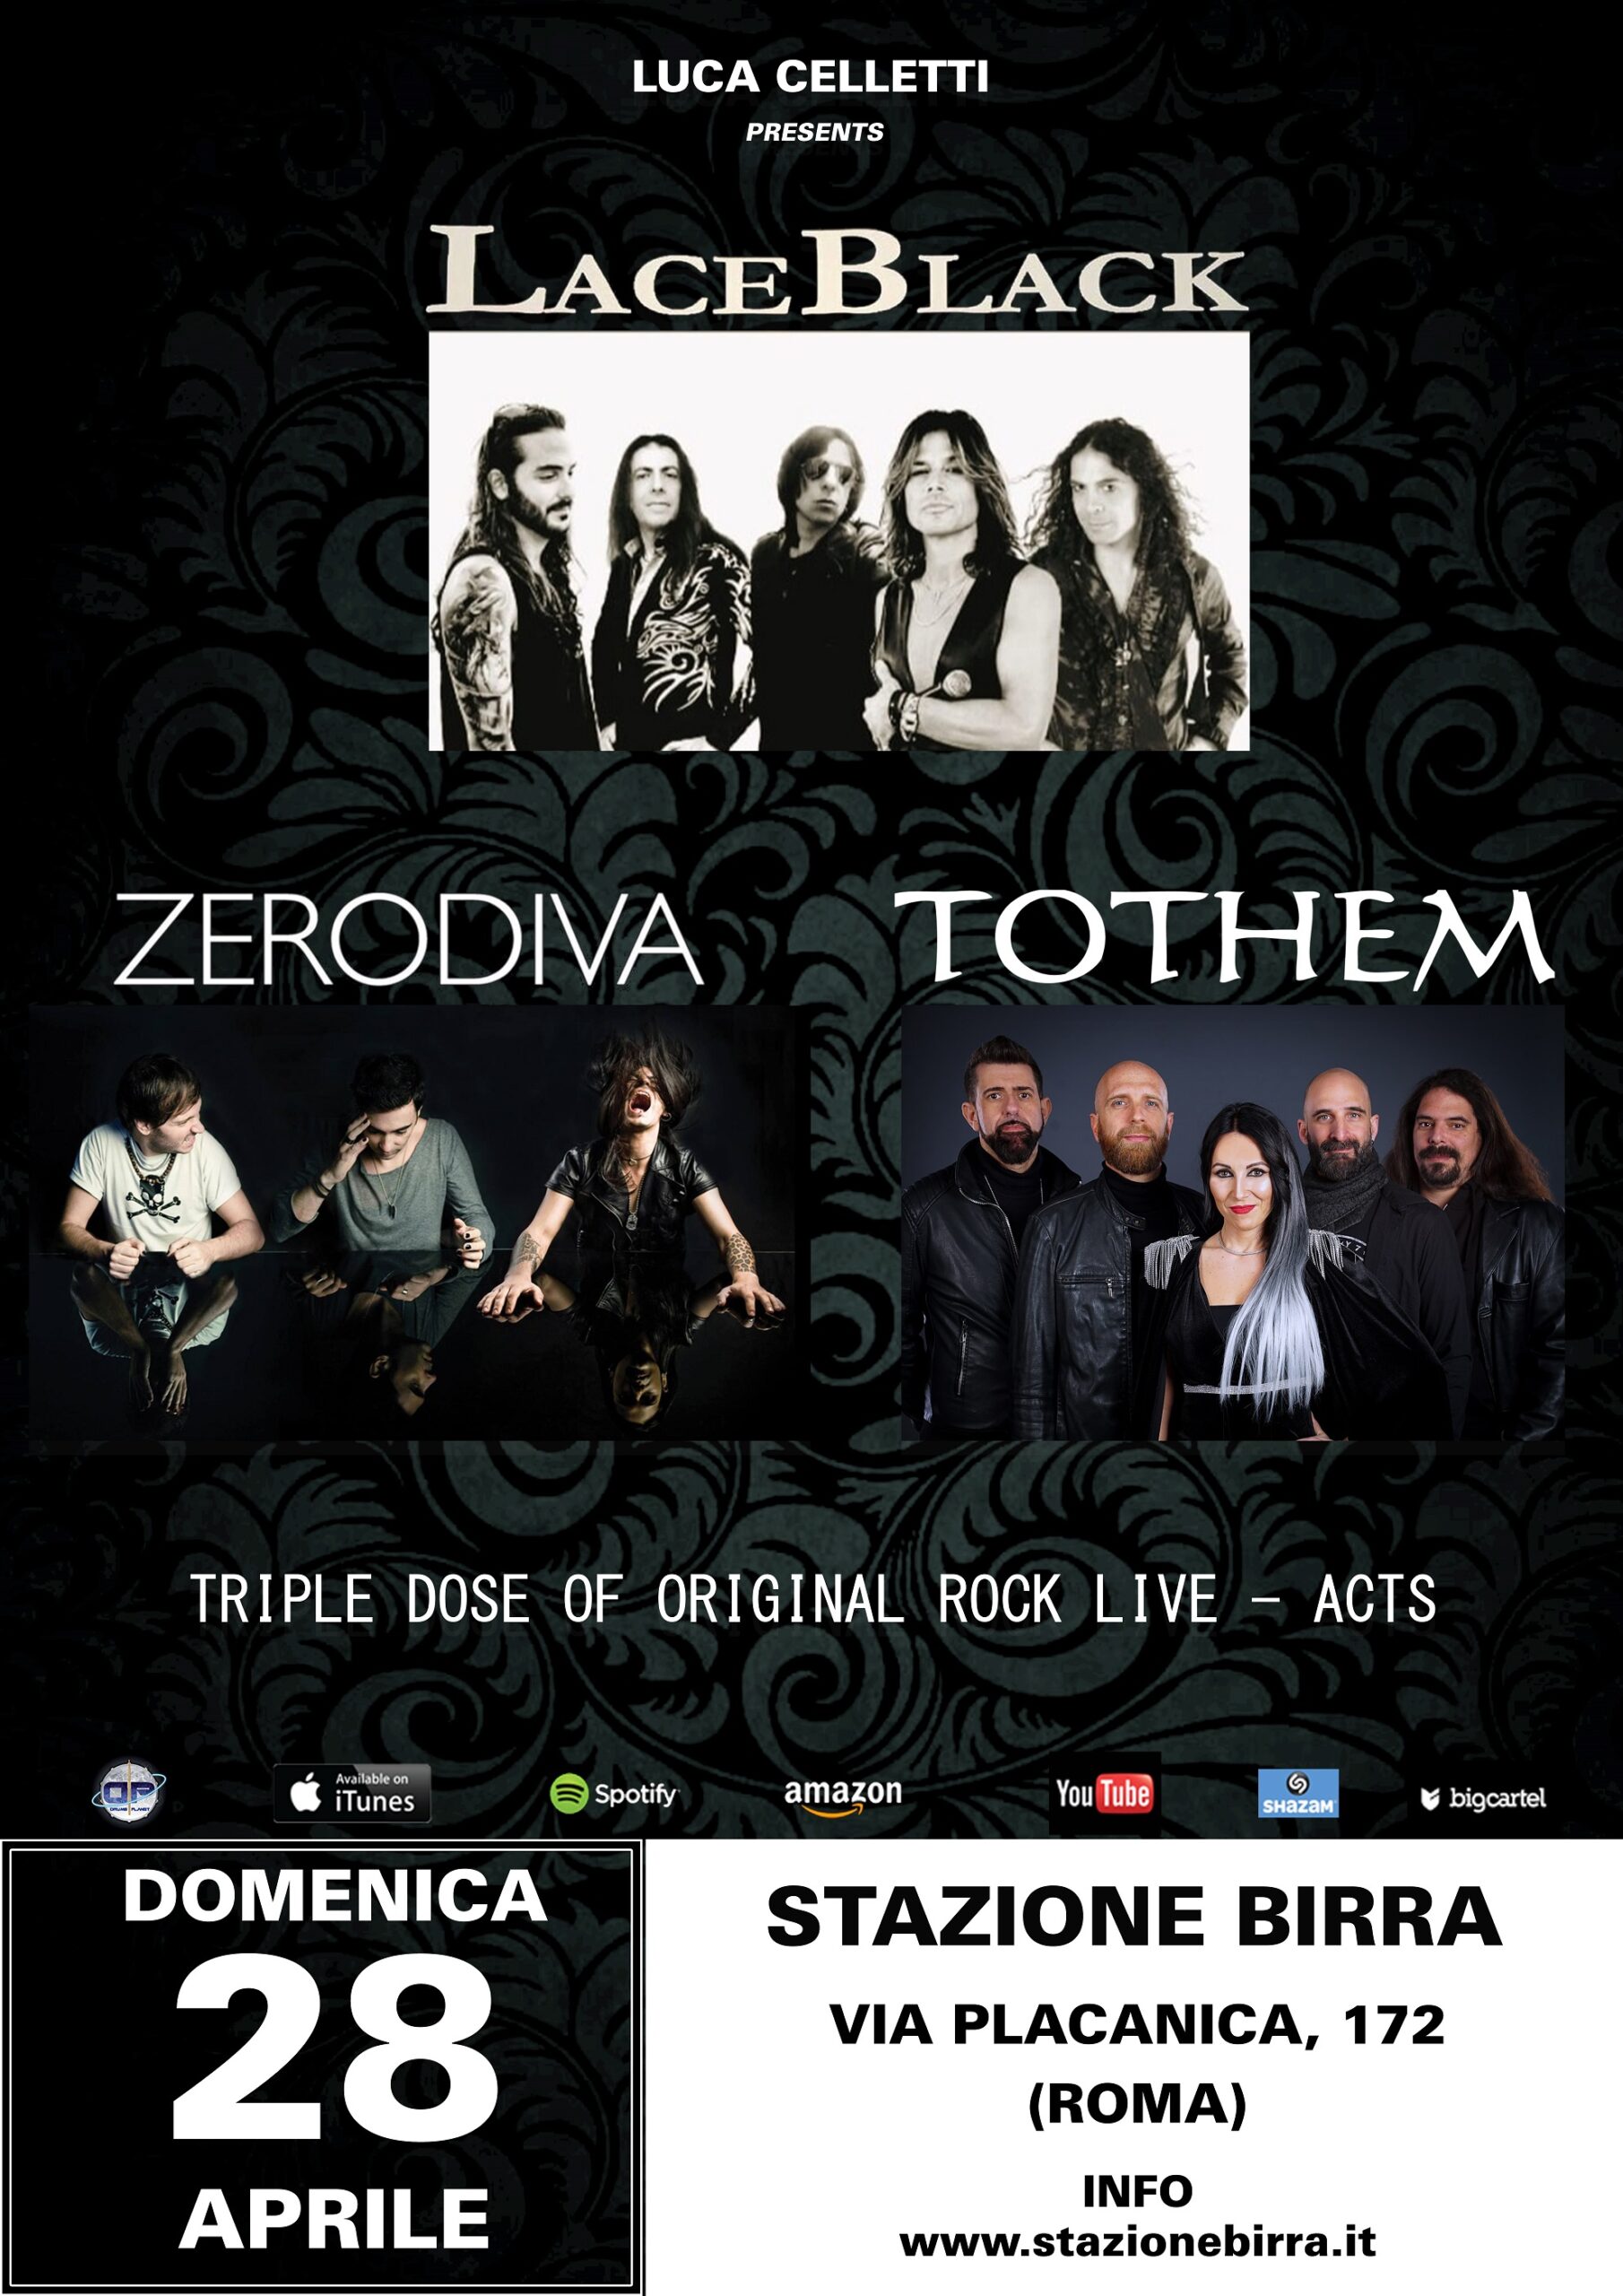 LACEBLACK + TOTHEM + ZERODIVA LIVE @ STAZIONE BIRRA